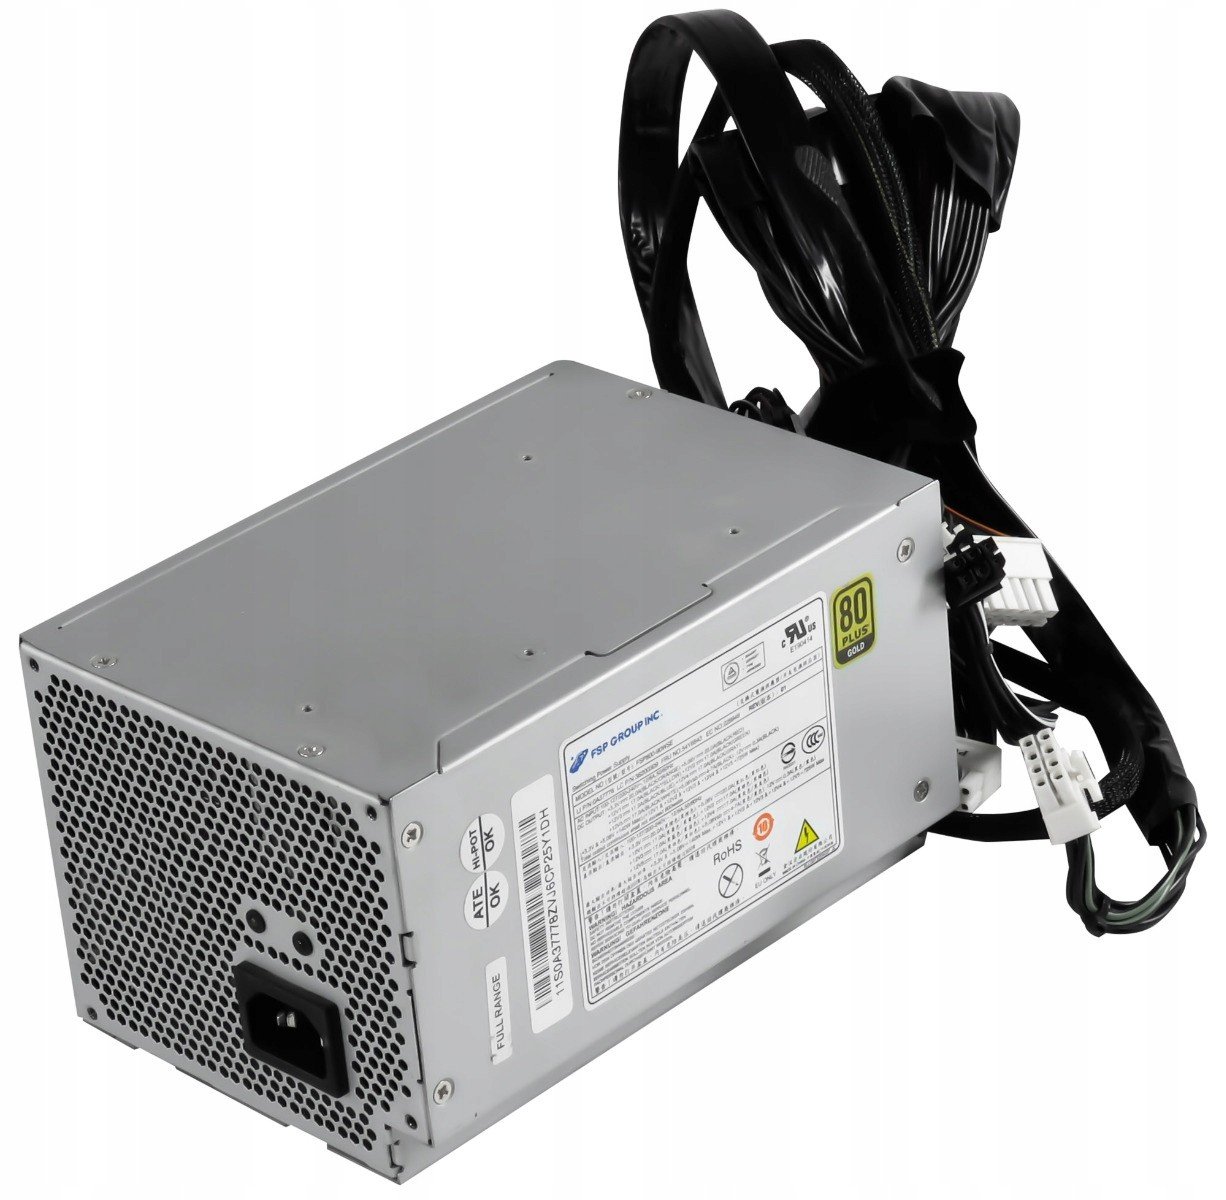 Fsp Fortron Fsp 800-90WSE Thinkstation C30 800W